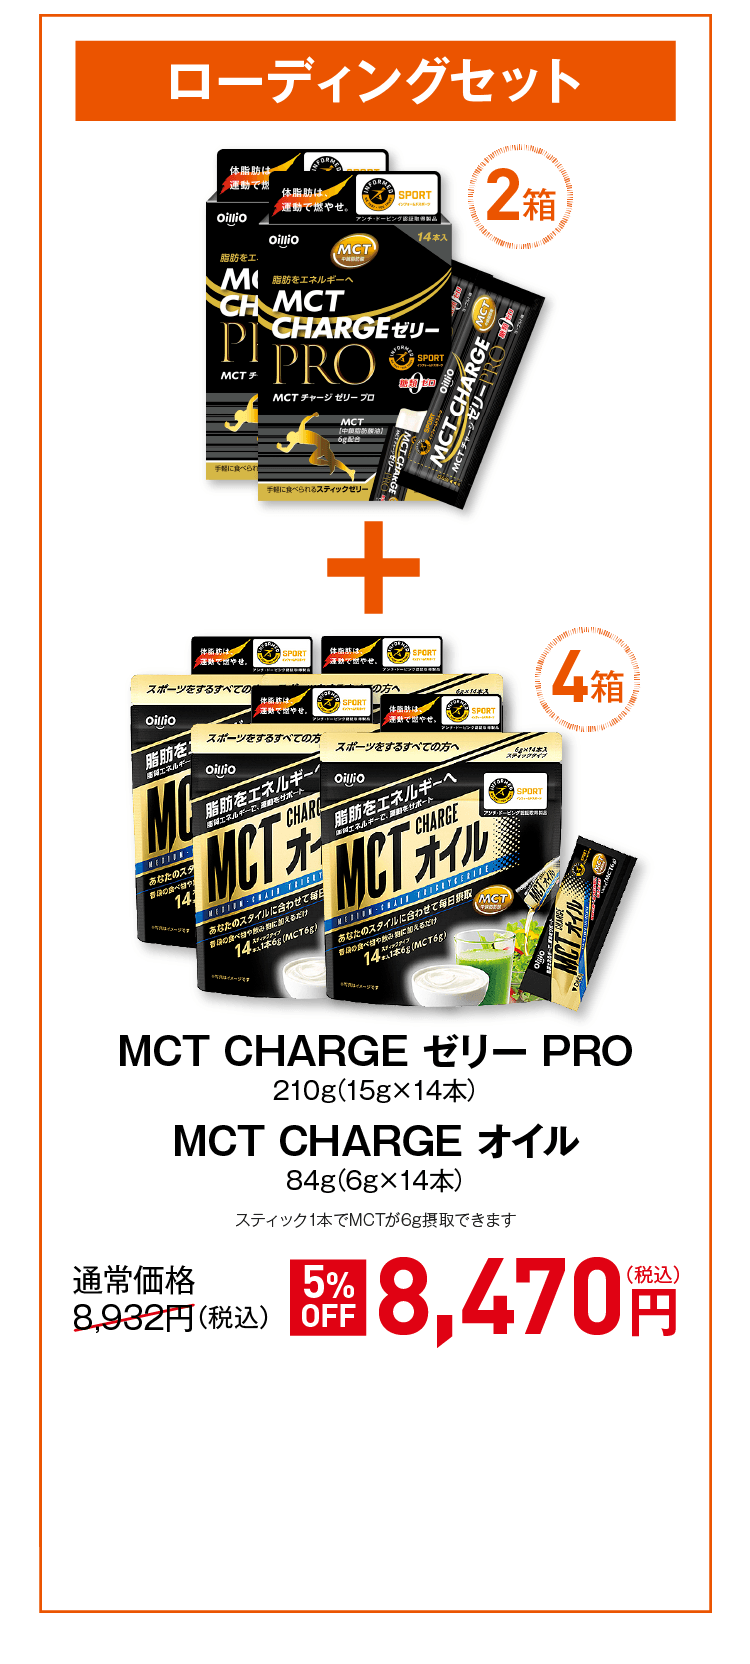 MCT CHARGE ゼリー PRO 210g(15g×14本)MCT CHARGE パウダー 80g(8g×10本)スティック1本でMCTが6g摂取できます